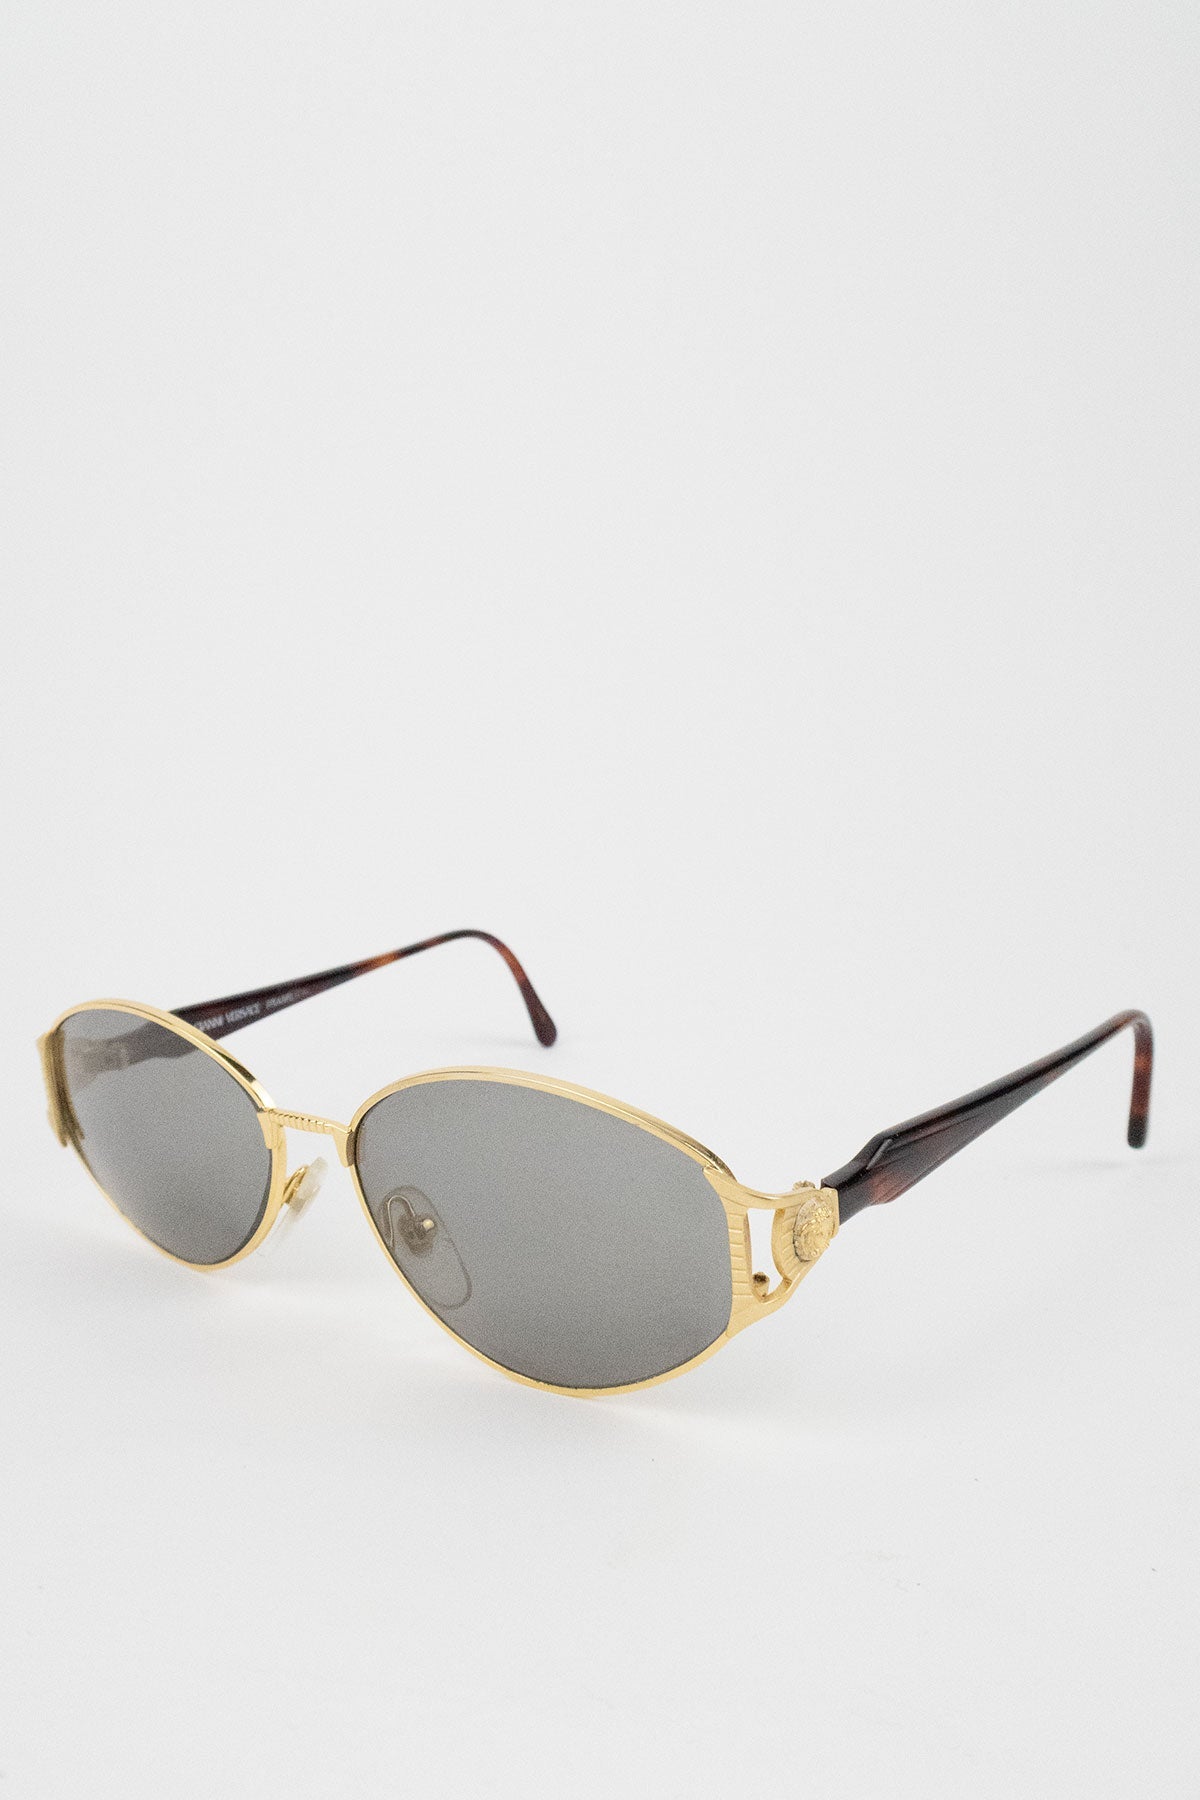 Gianni Versace Sunglasses - Jade Vintage